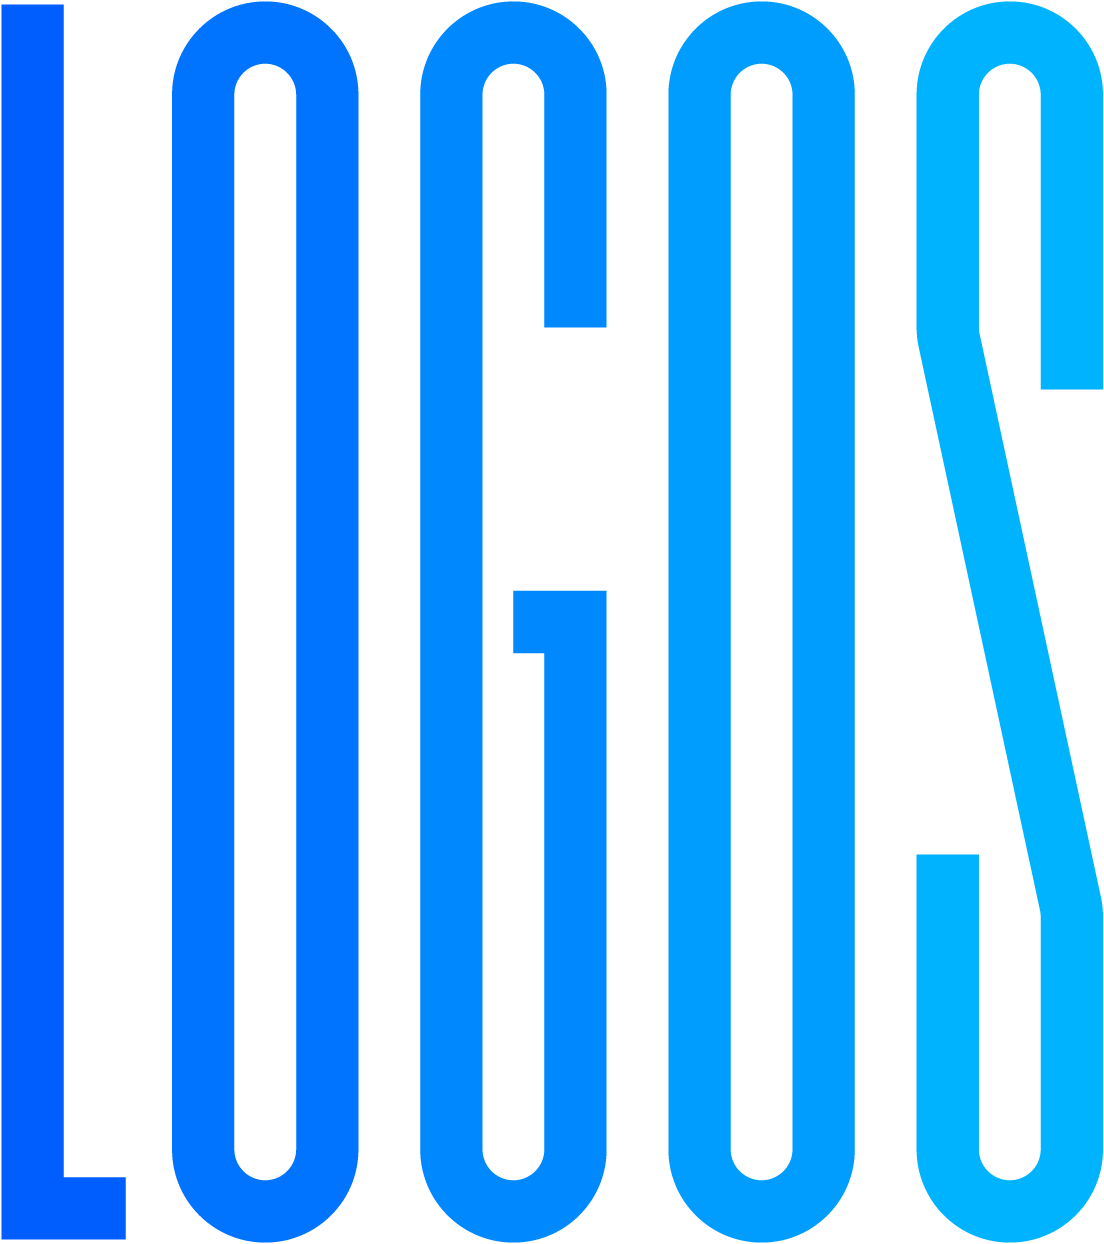 Logos 2010 – 2015